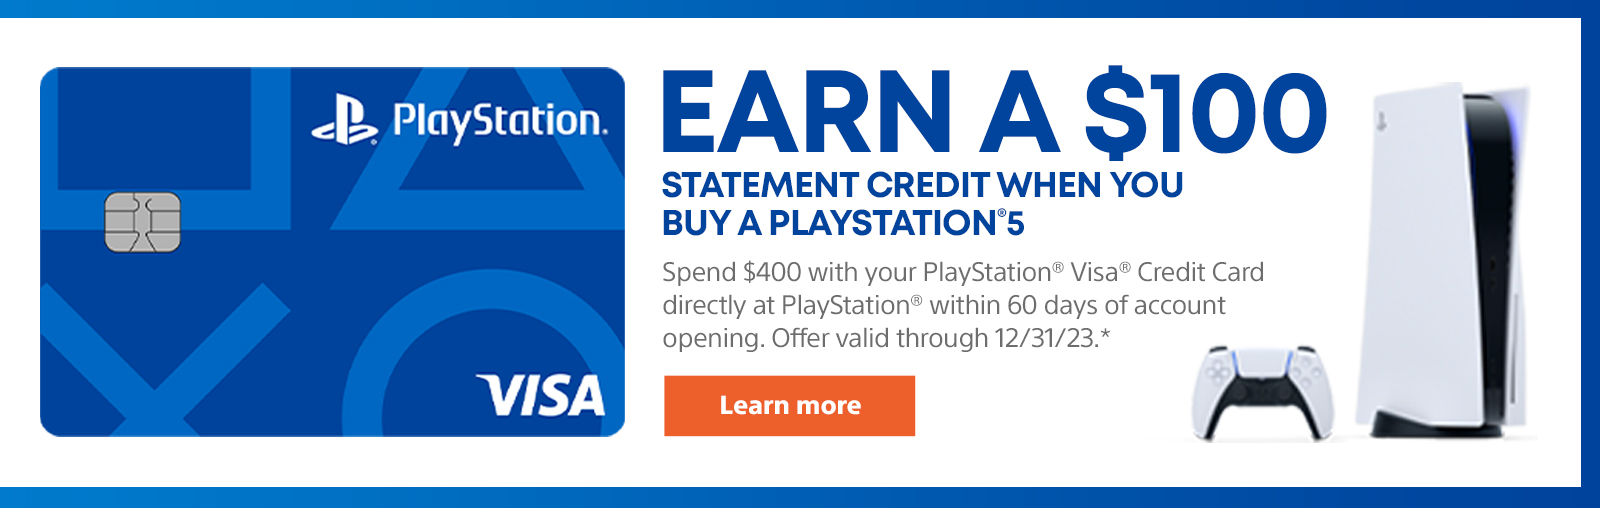 Verdienen Sie eine Erklärung von 100 USD, wenn Sie eine PlayStation 5 kaufen. Verwenden Sie die PlayStation Visa -Kreditkarte, um innerhalb von 60 Tagen nach der Kontoeröffnung 400 US -Dollar direkt bei PlayStation auszugeben. Bieten Sie bis zum 31.12.23 gültig an